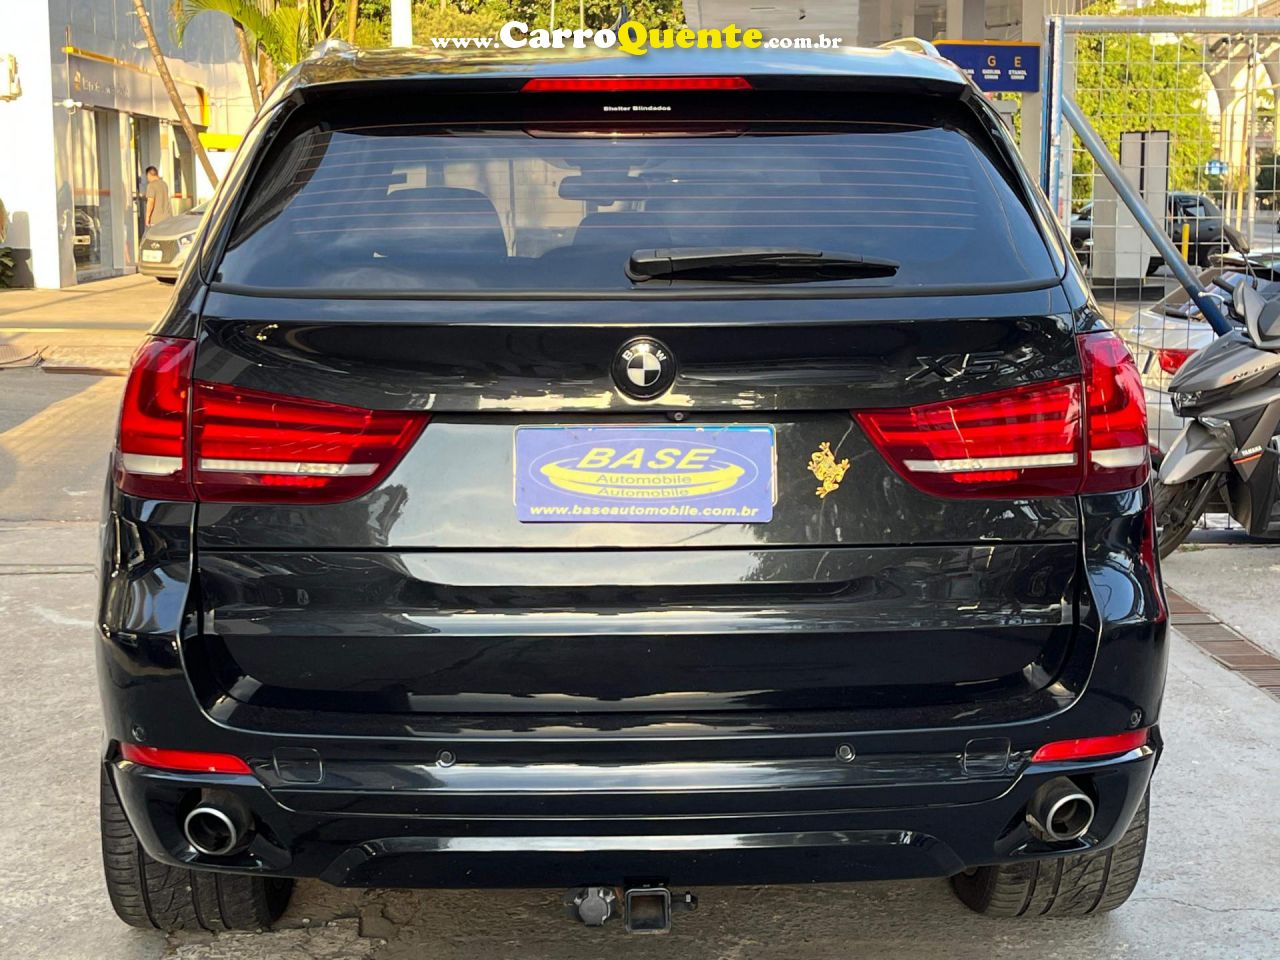 BMW   X5 XDRIVE 30D 3.0 DIESEL   PRETO 2015 3.0 DIESEL - Loja